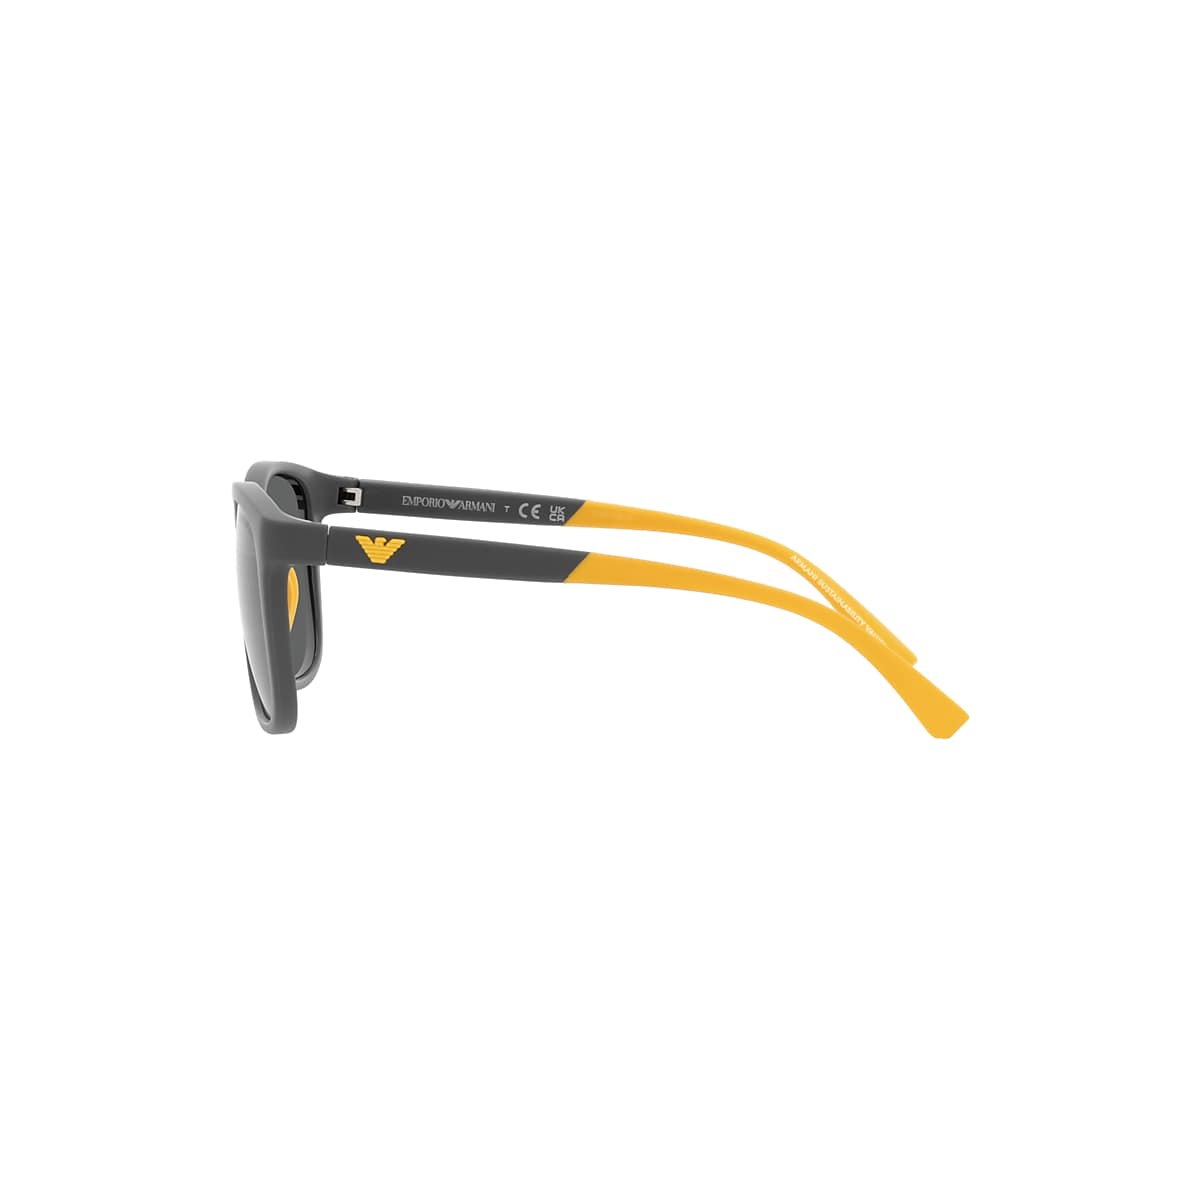 Emporio Armani EA4184 49 Dark Grey & Matte Grey Sunglasses | Sunglass Hut  USA